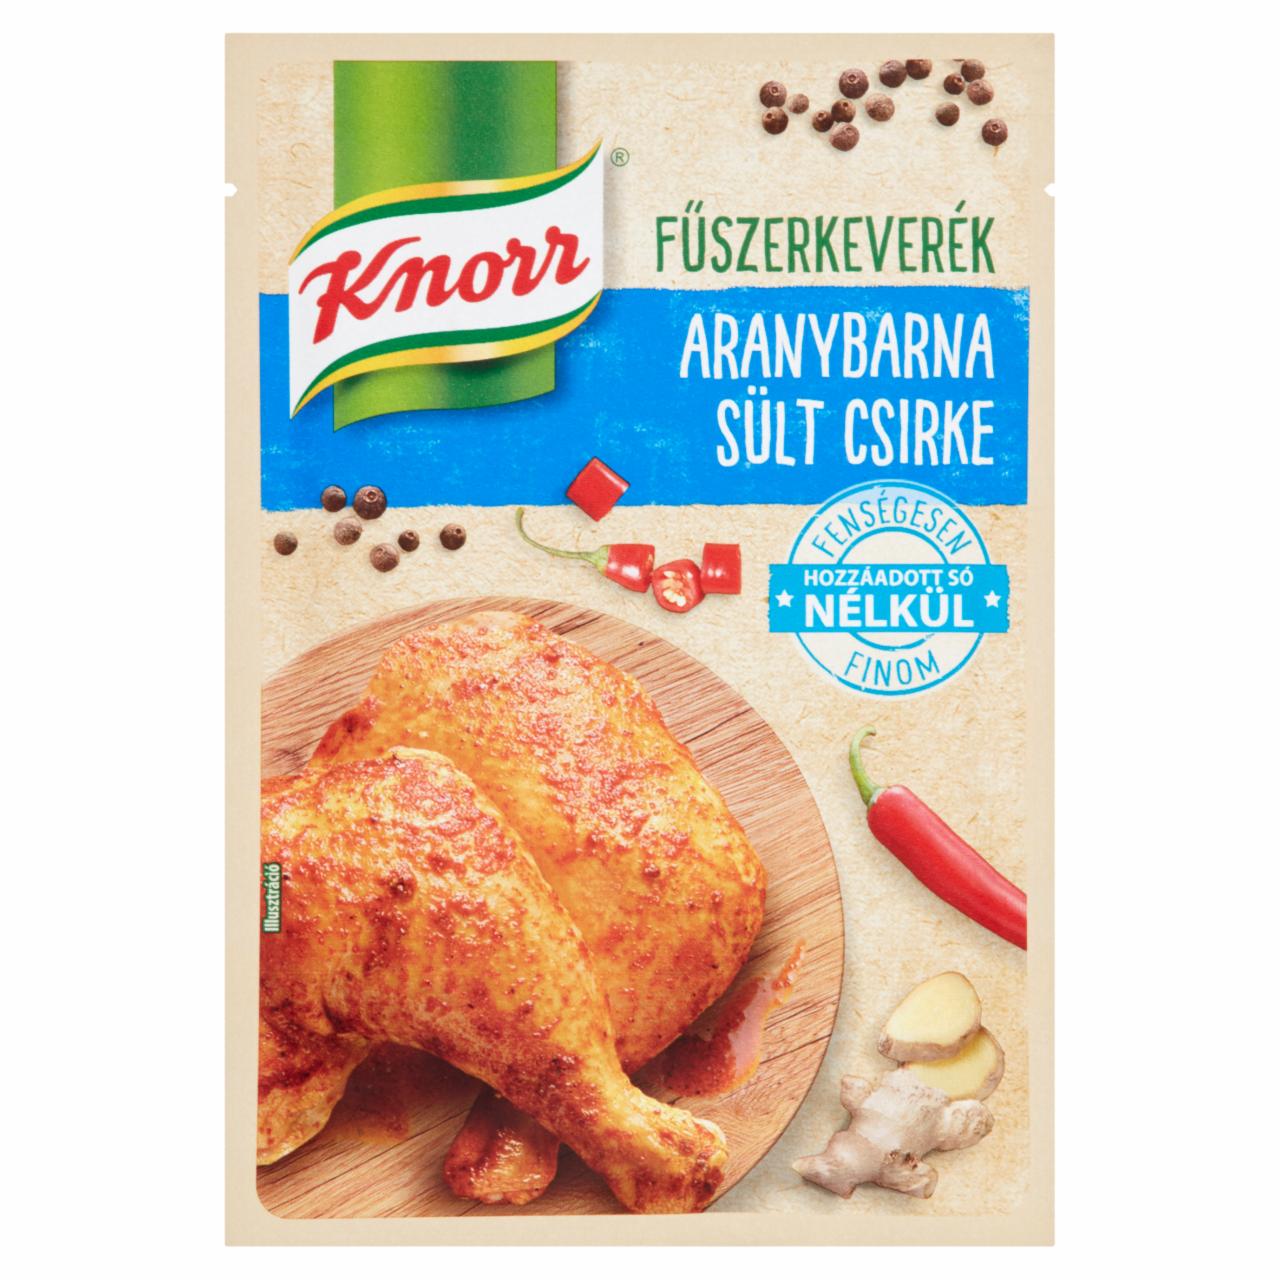 Képek - Knorr aranybarna sült csirke fűszerkeverék 25 g